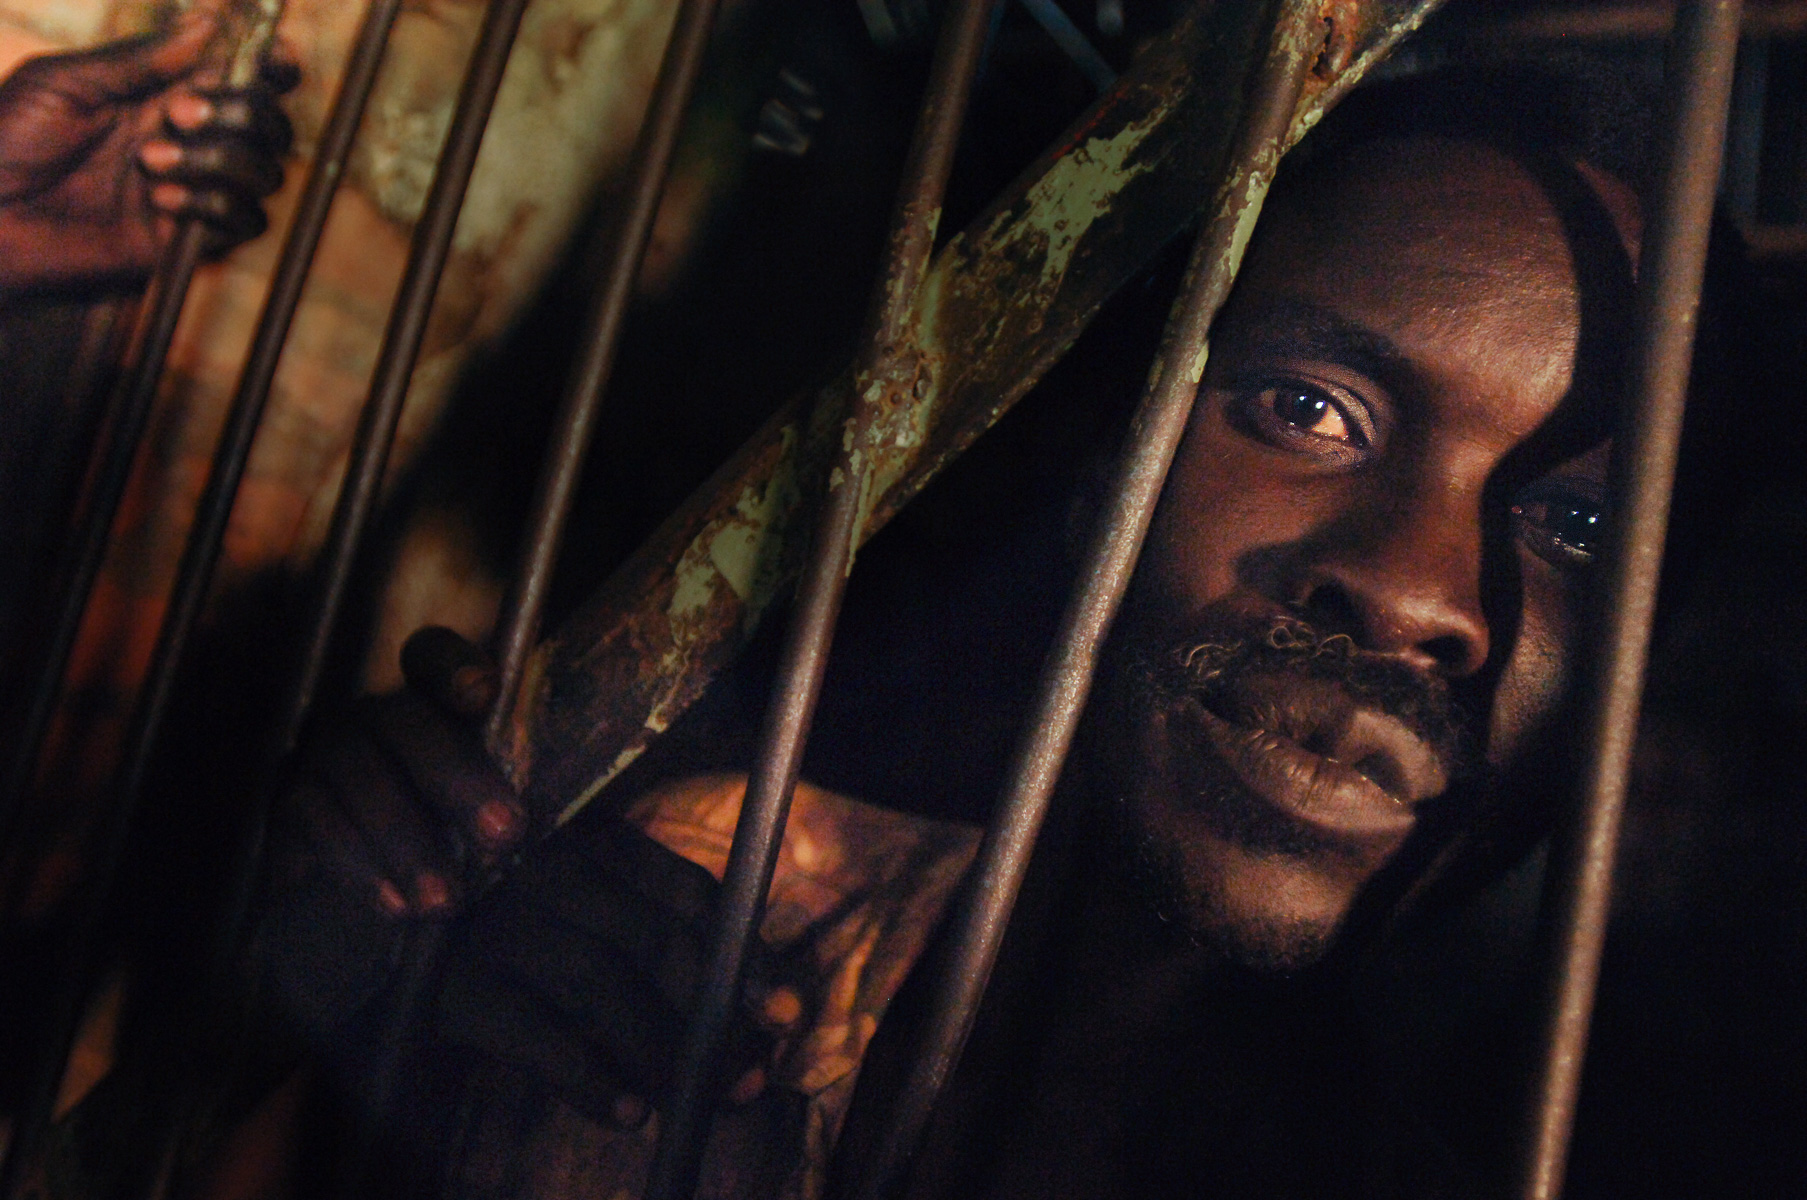 Prisoners are held in a regional jail in Yei, South Sudan.  